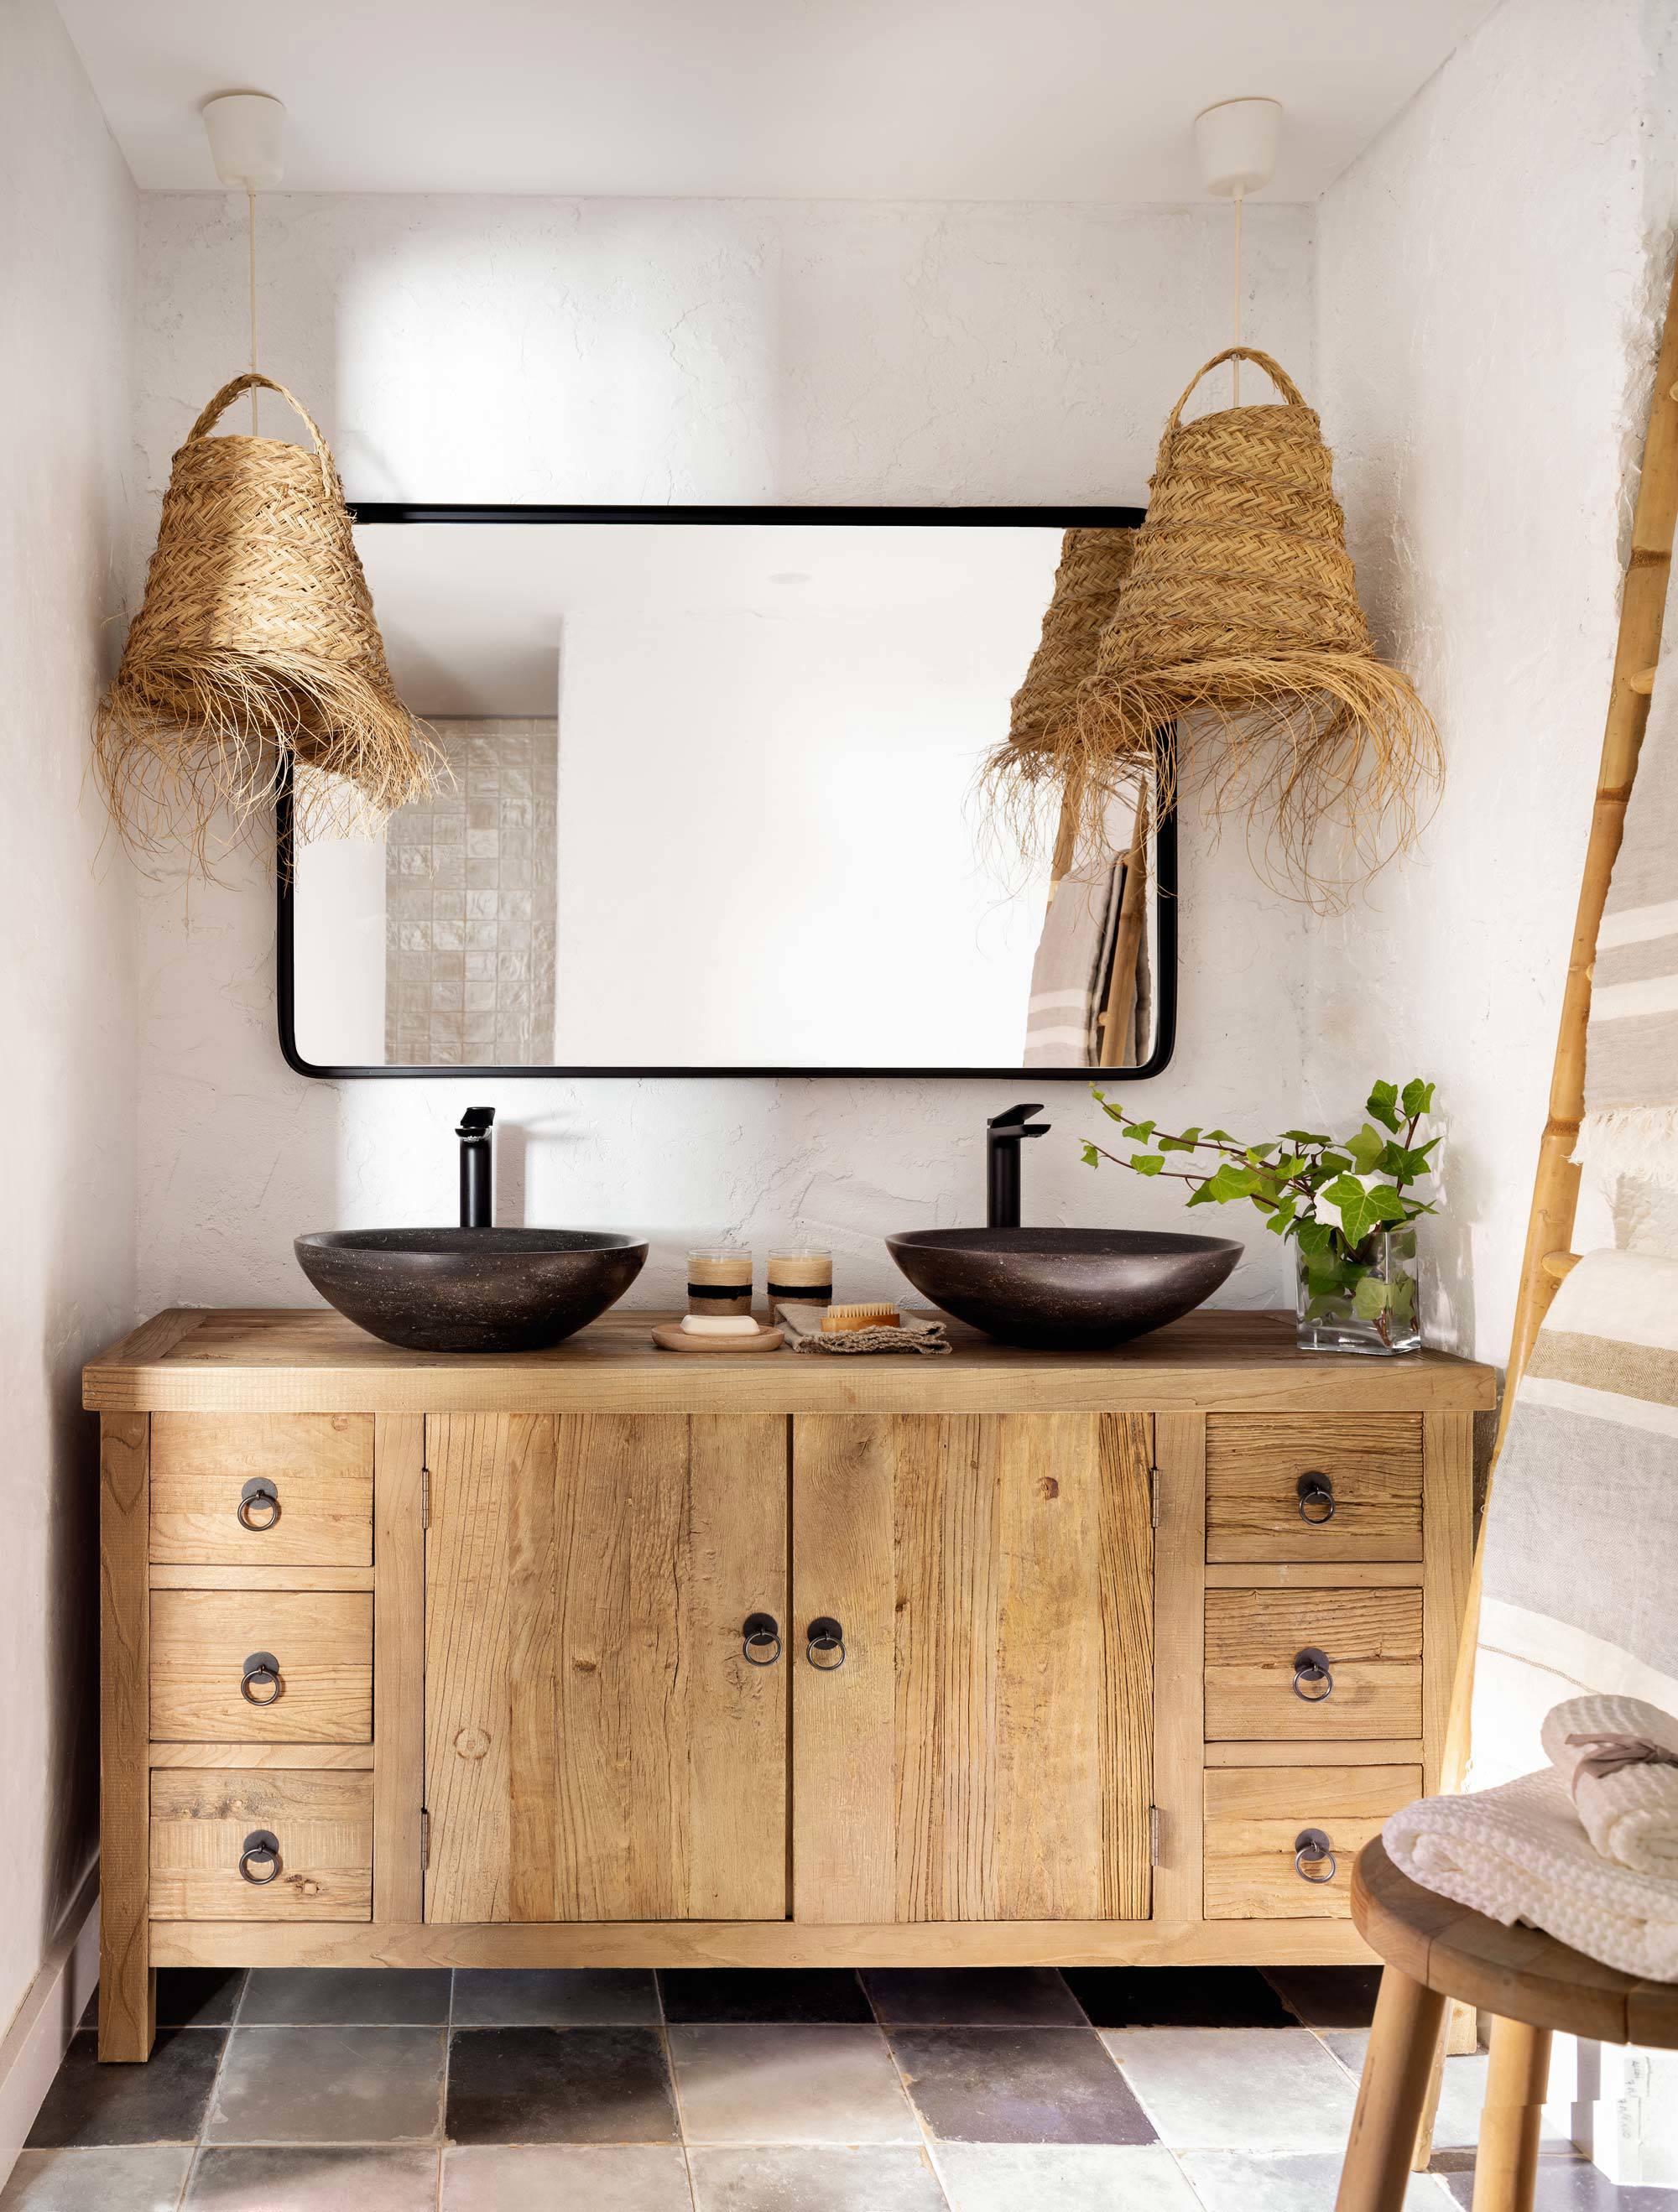 Mueble de lavano de madera y espejo con marco negro en la pared